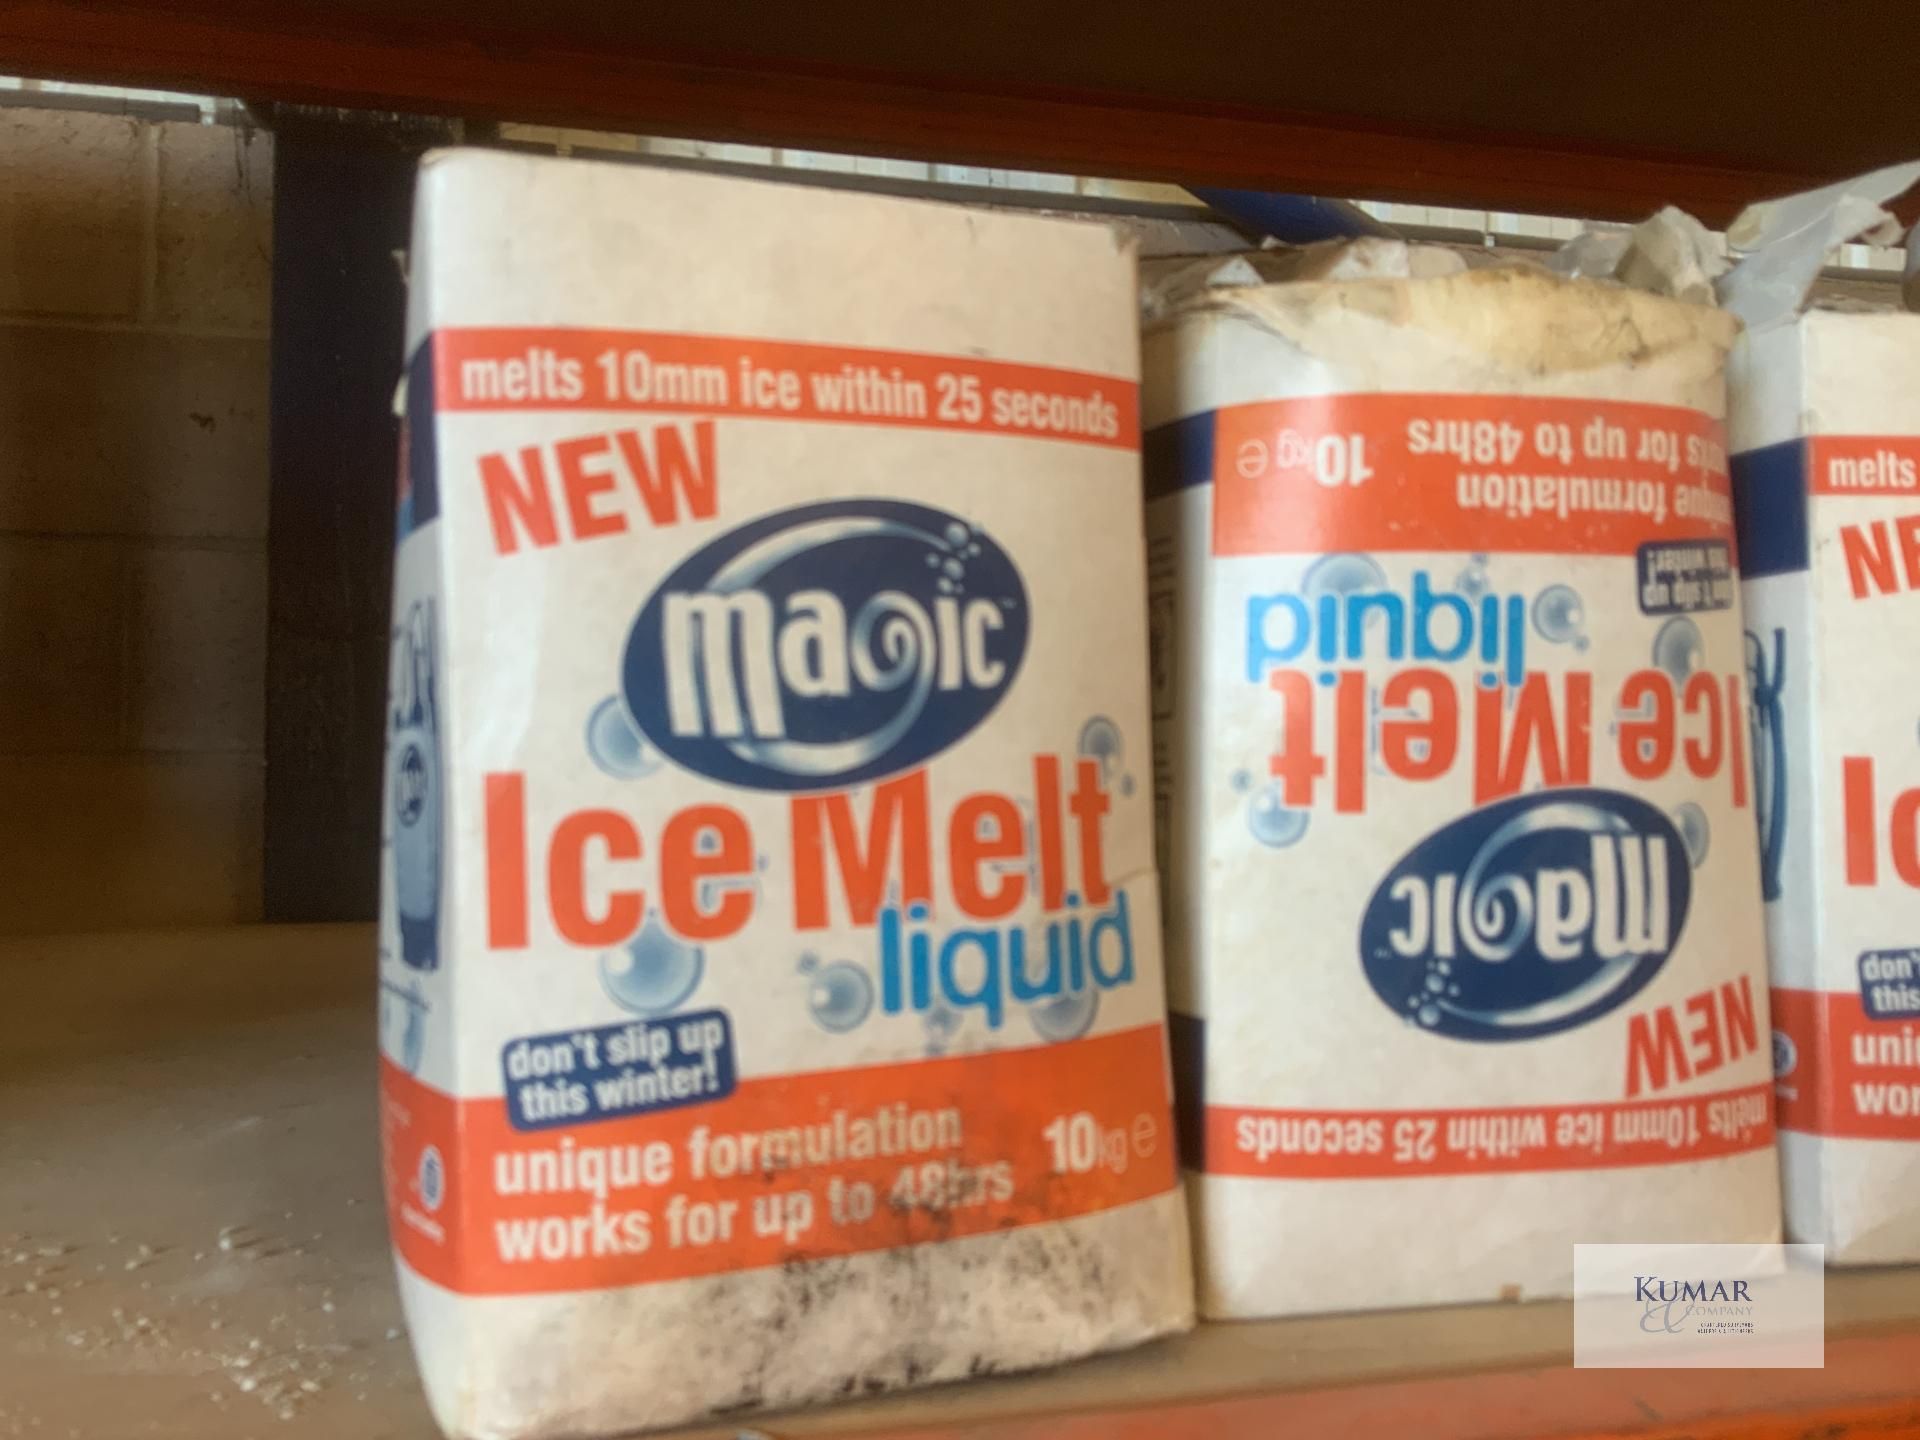 Magic ice :ice melt - Bild 4 aus 5